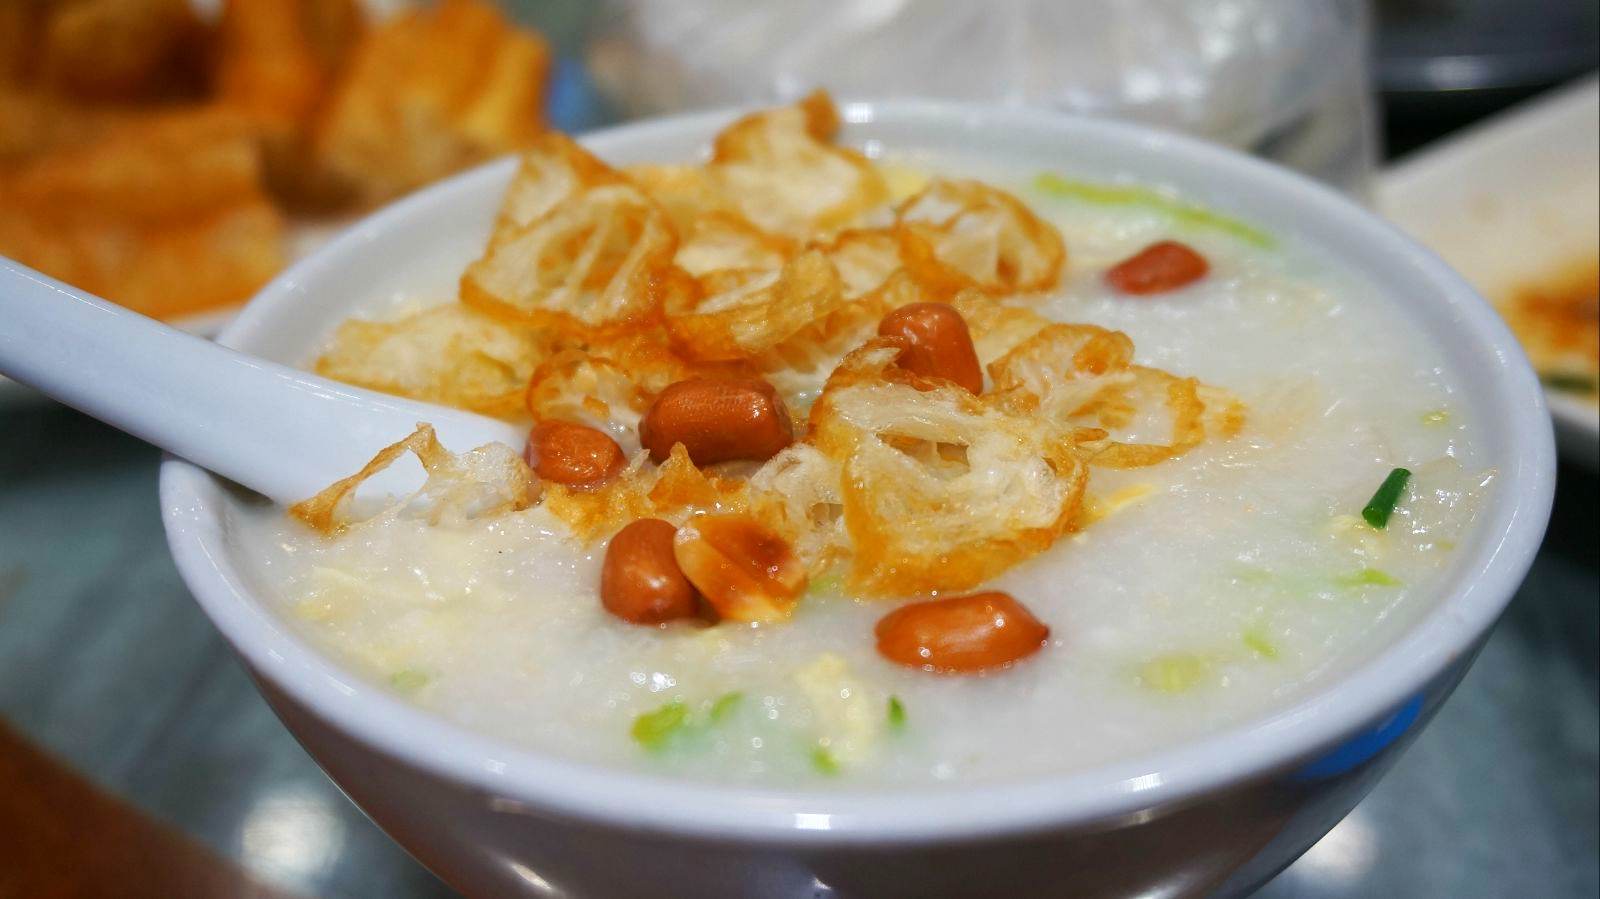 鮮魚湯底蠔仔粥~☻~ Oyster Congee With Fish Soup | Alice in the Kitchenland